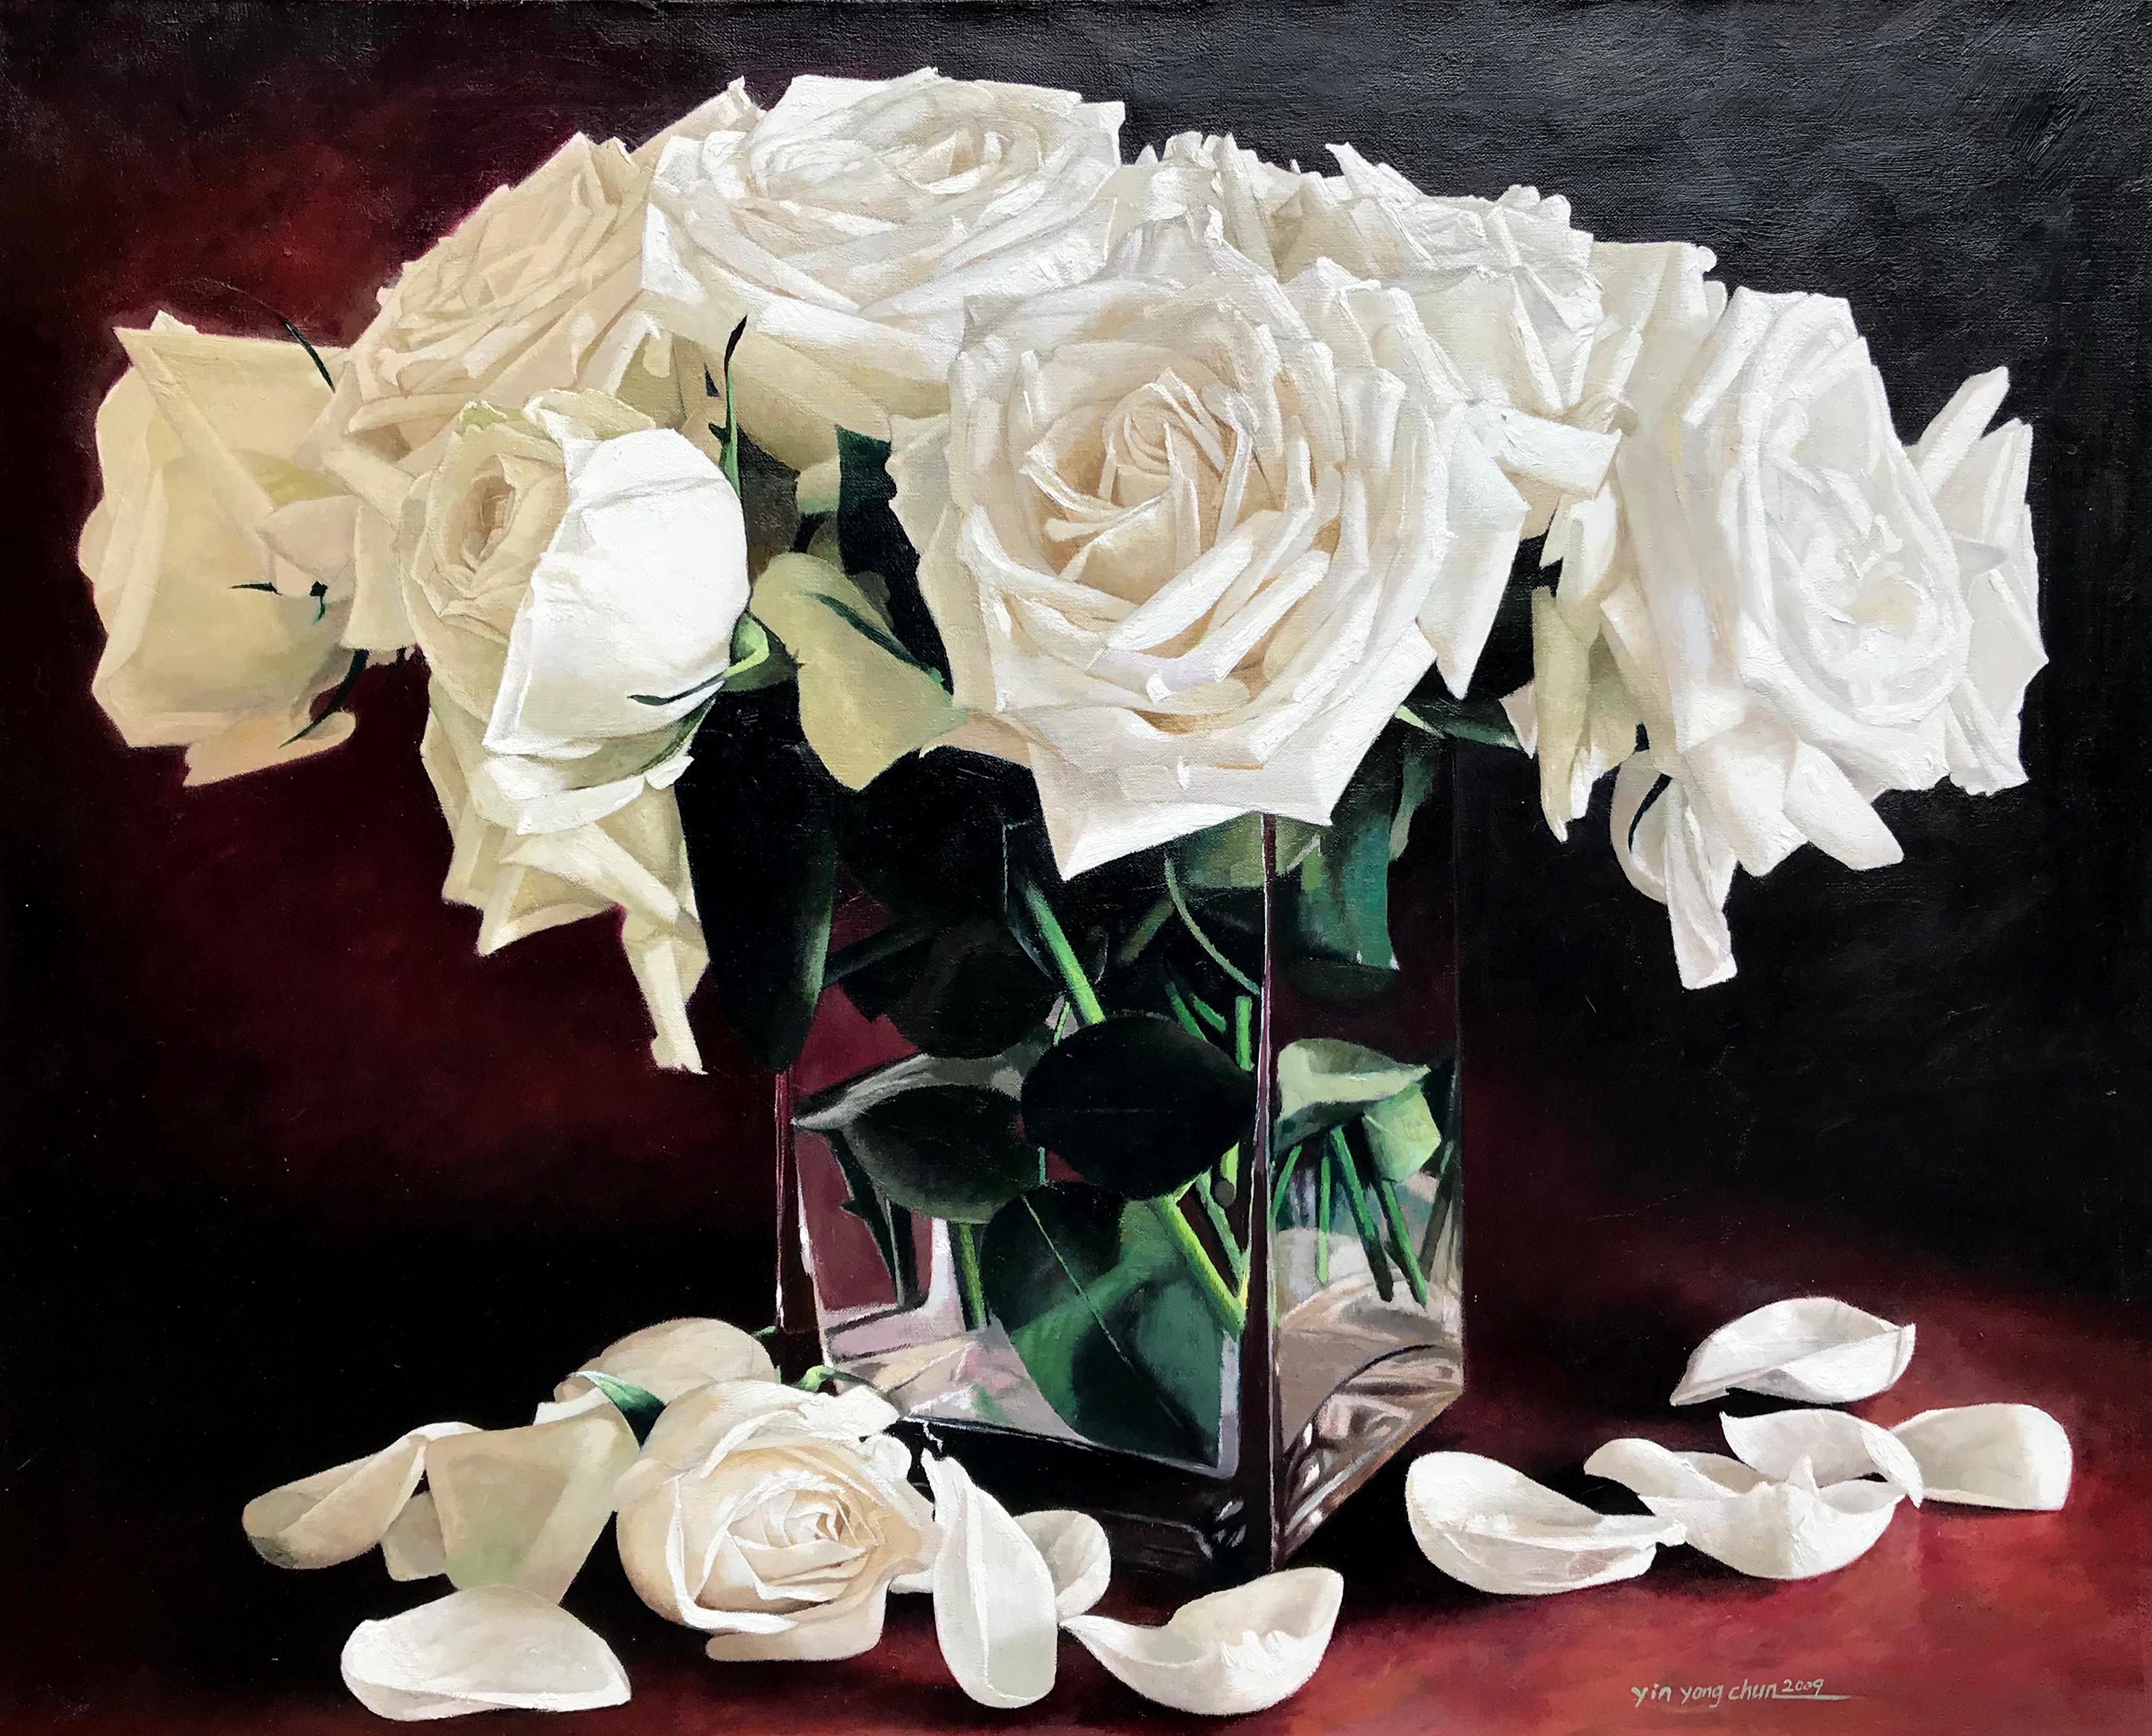 Dieses Blumenstillleben, "Weiße Rosen", von der Künstlerin Yin Yong Chun  ist ein 24x30 großes Ölgemälde auf Leinwand, das einen Strauß weißer Rosen in einer Glasvase mit heruntergefallenen weißen Blütenblättern auf dem Tisch zeigt. Der Hintergrund